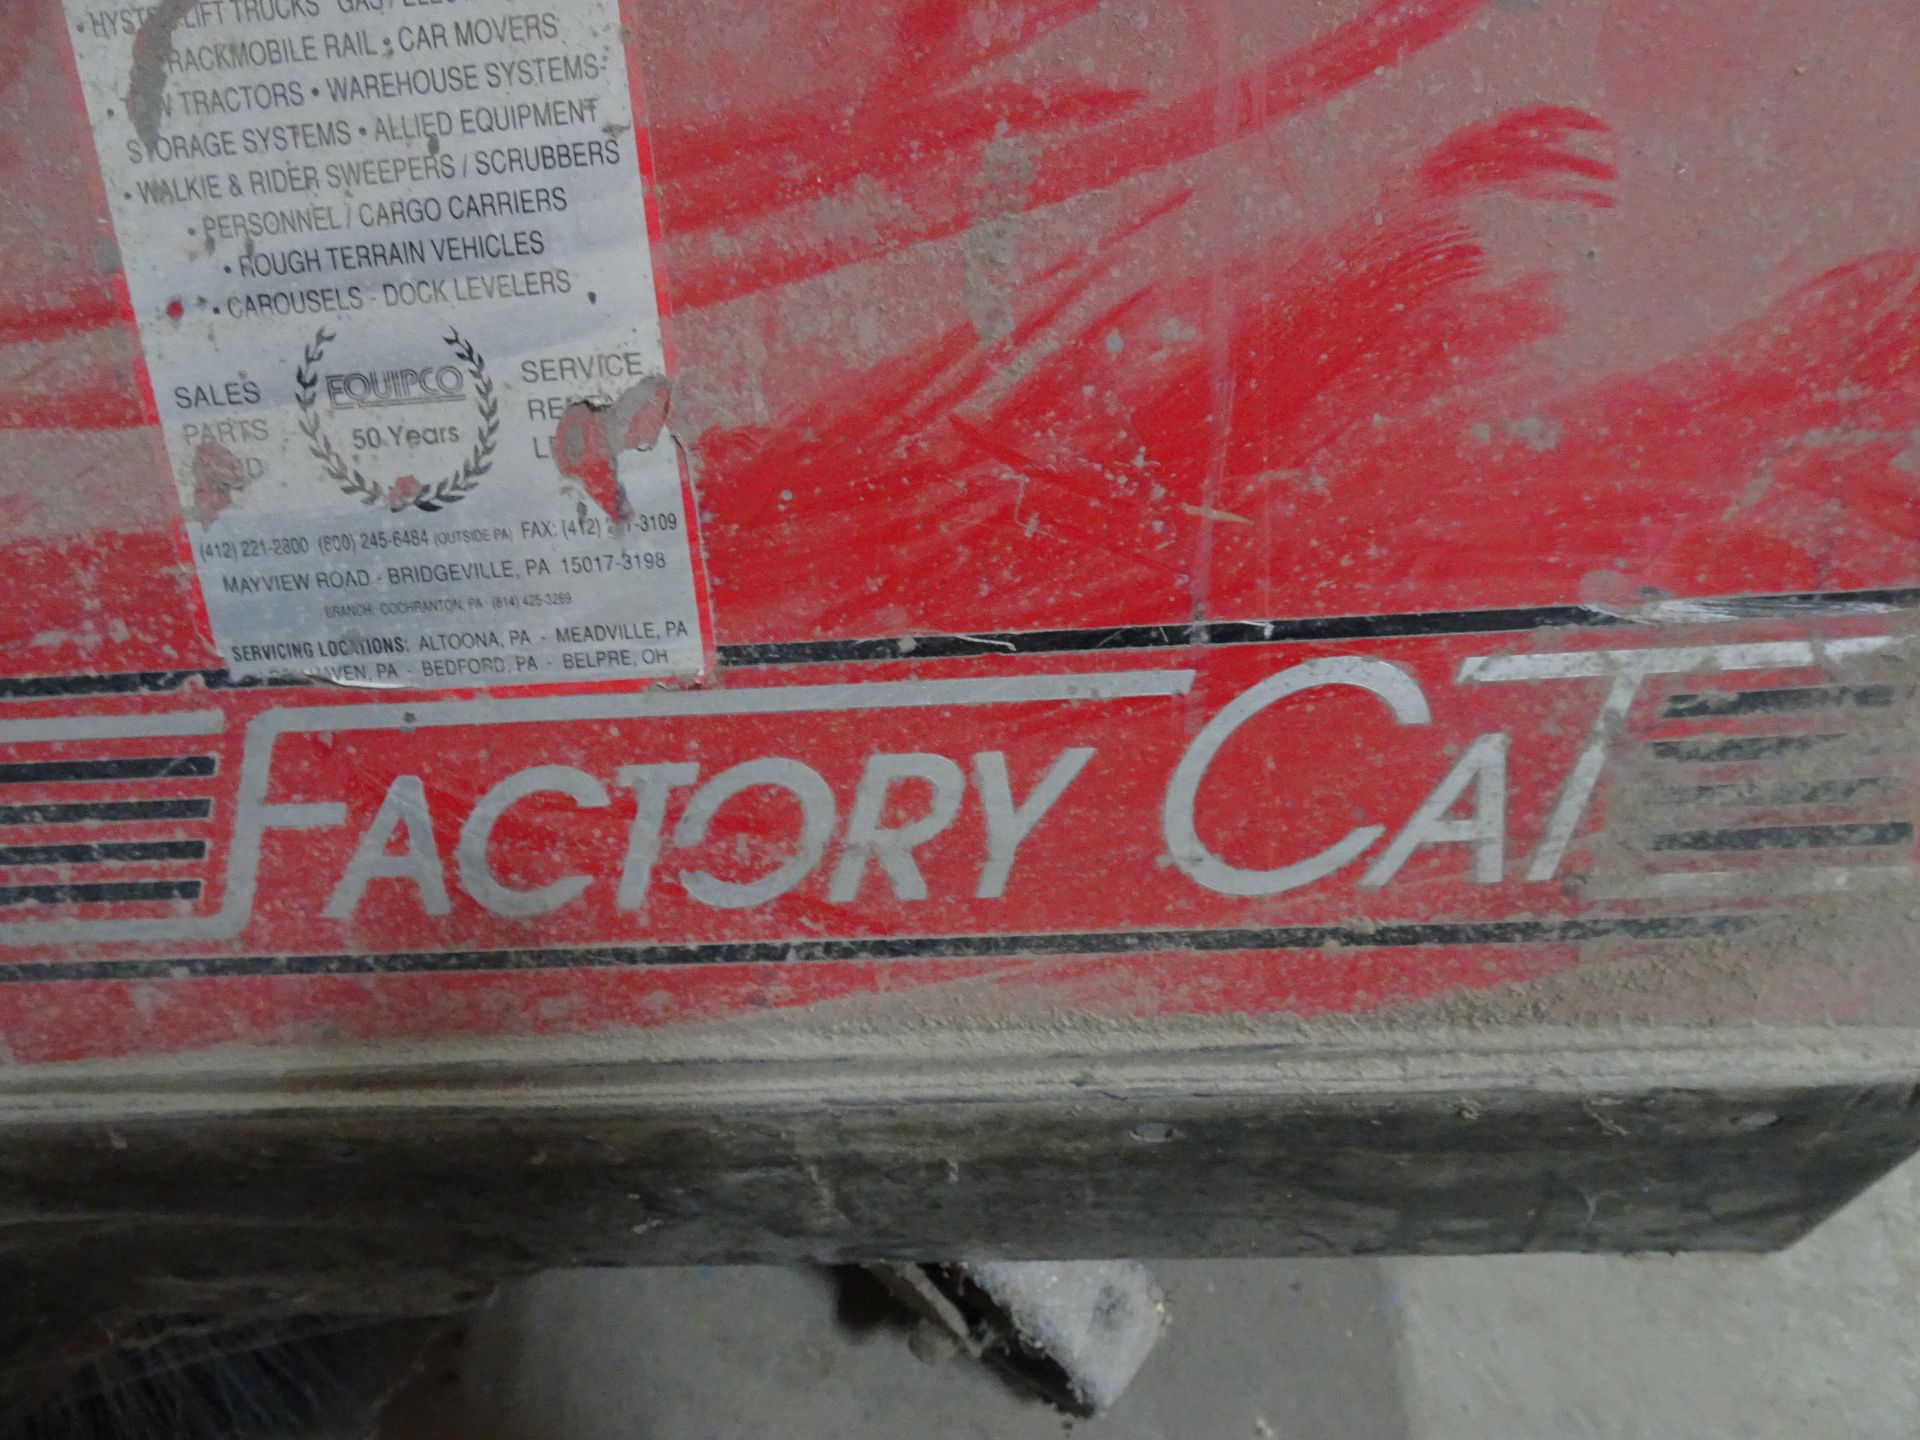 Factory Cat Model 34 Floor Scrubber - Image 2 of 3